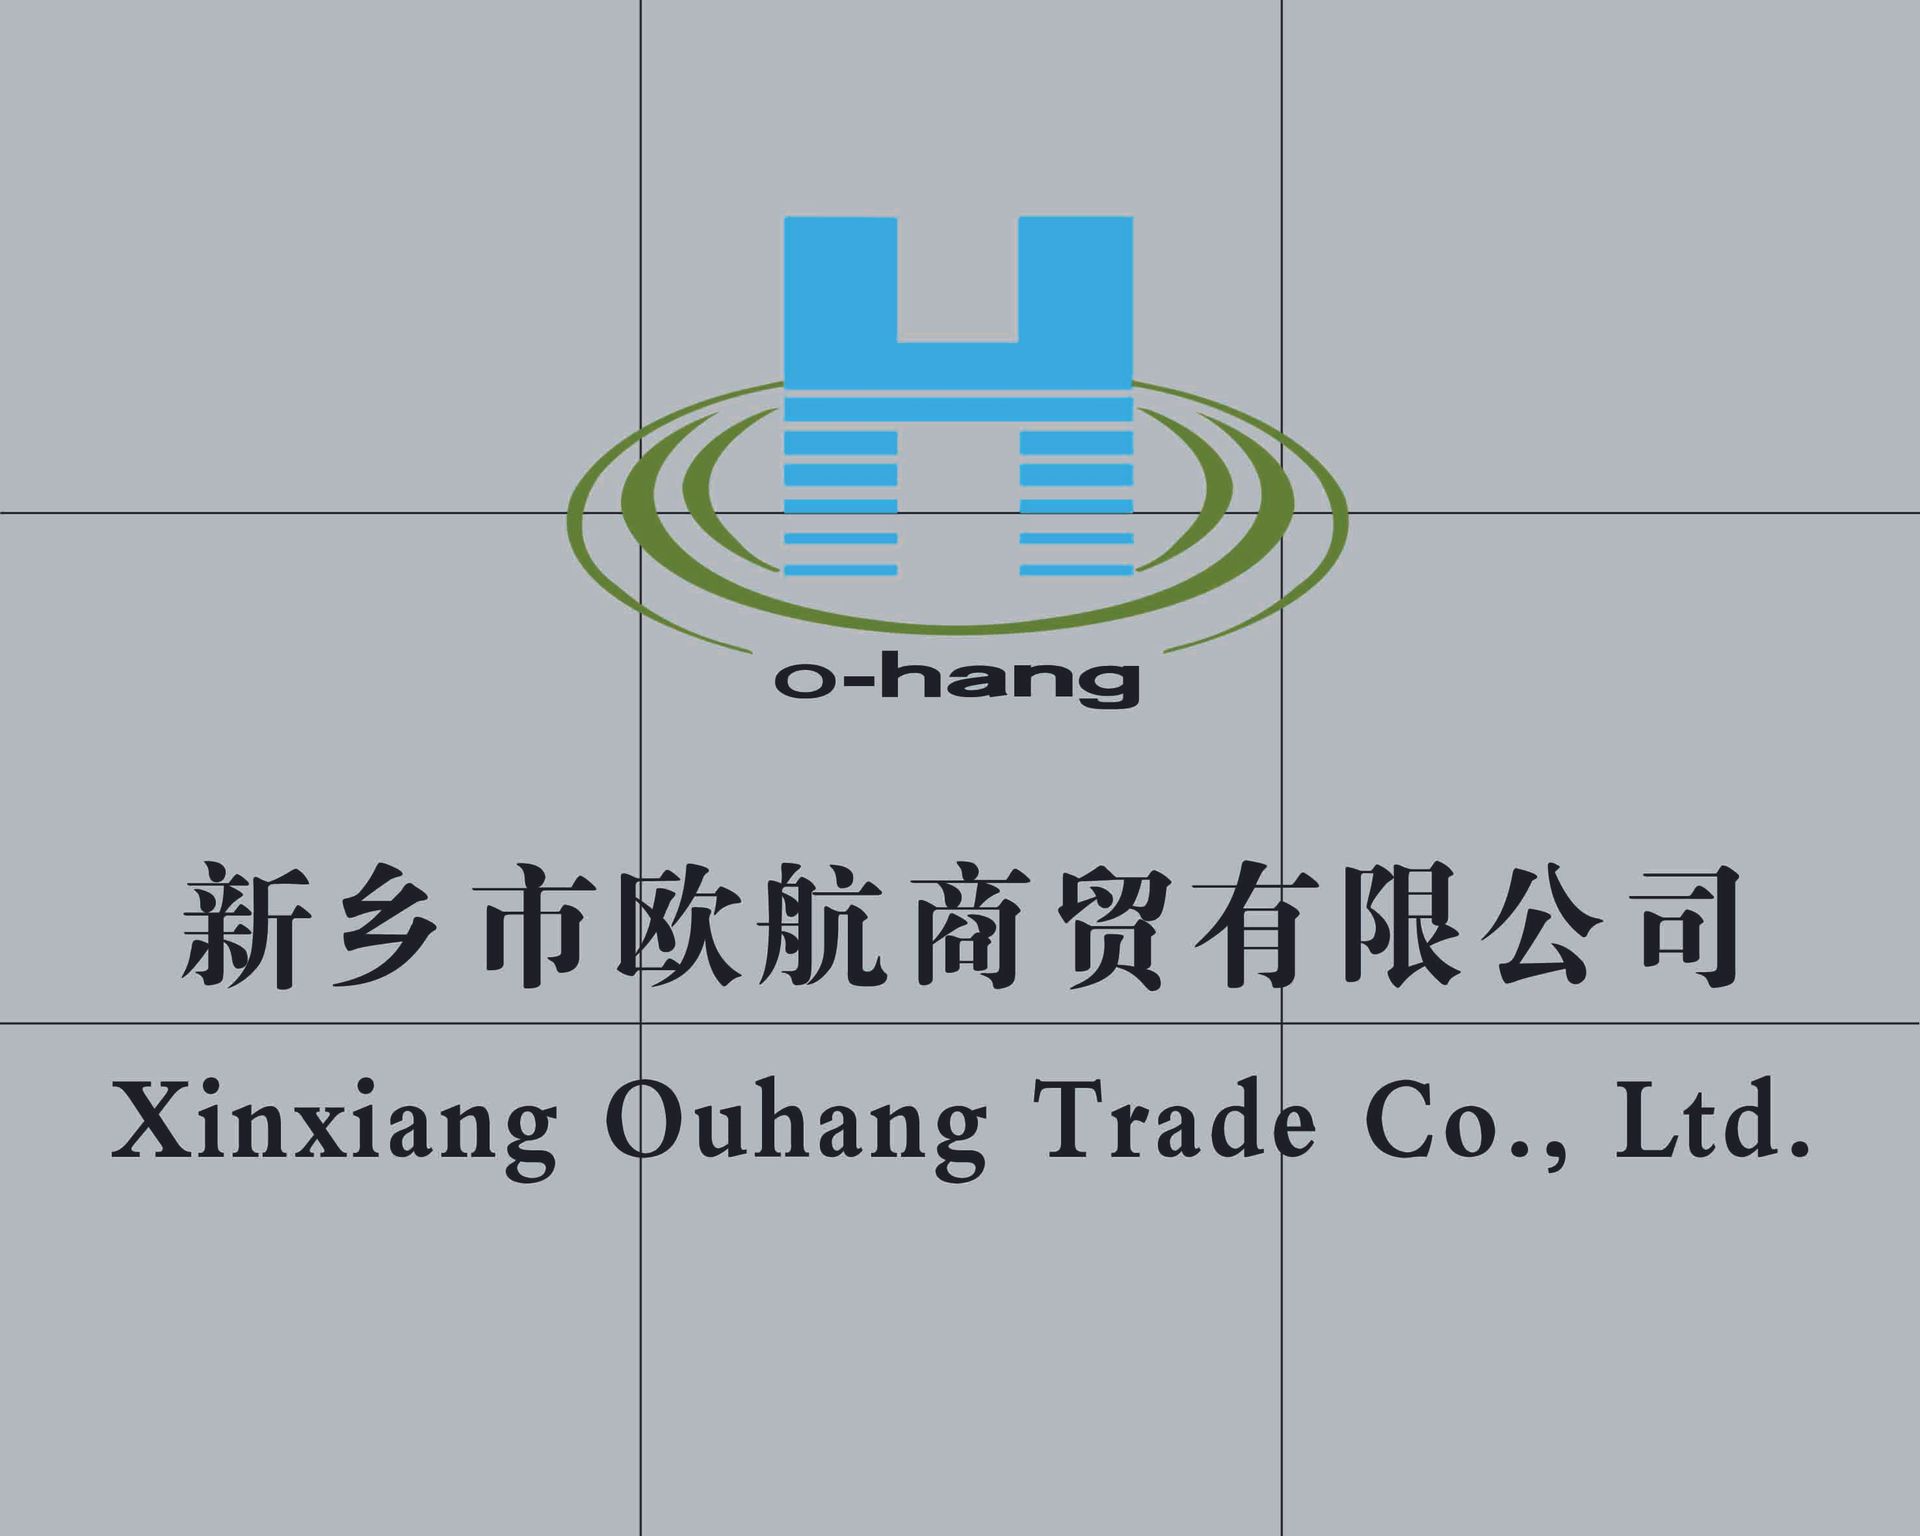 Xinxiang Ouhang Trade Co., Ltd. logo